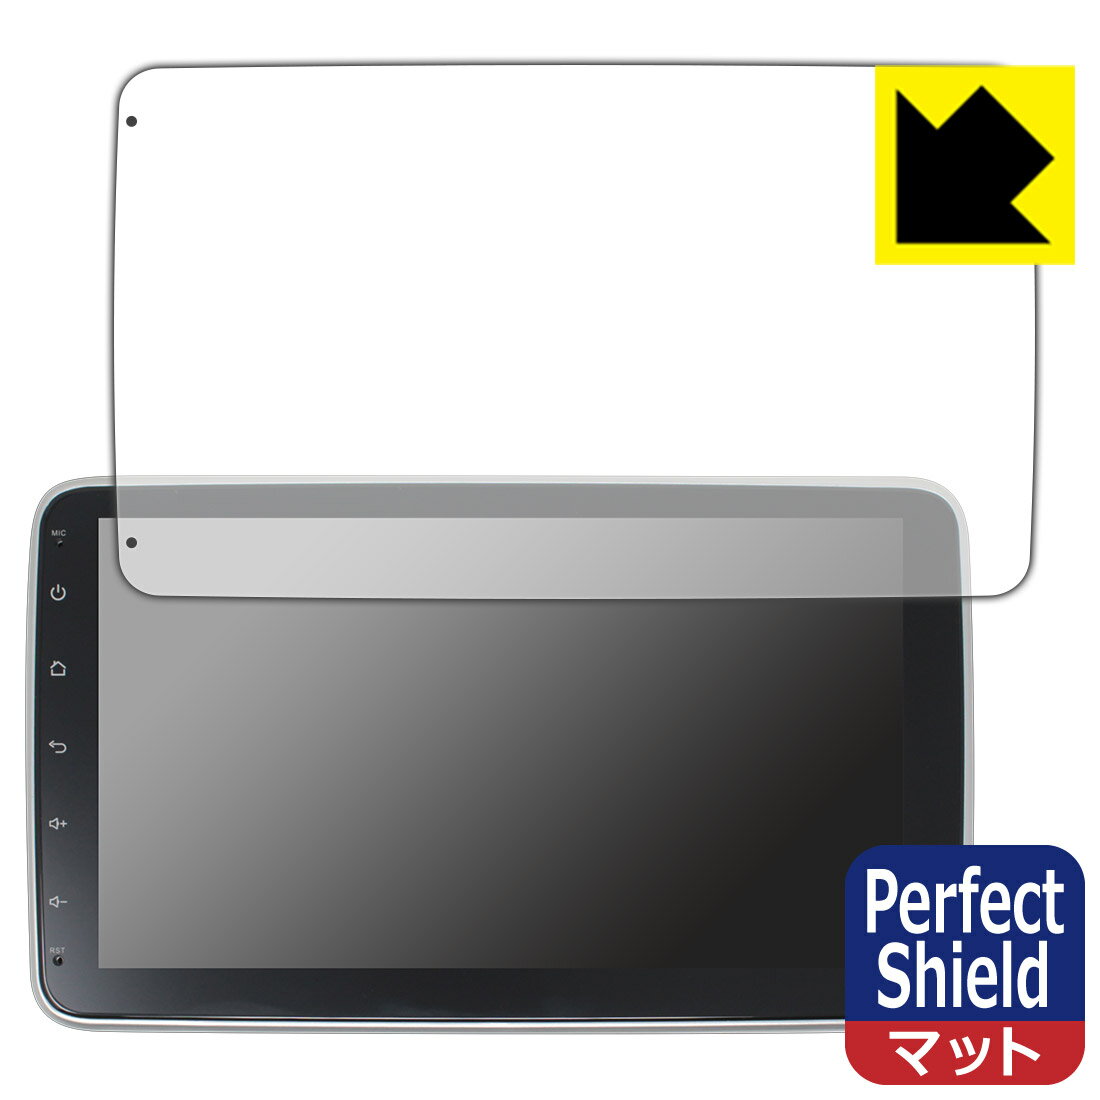 ●対応機種 : WOWAUTO 1DIN 10インチ タッチパネルプレーヤー AG10b専用の商品です。●製品内容 : 画面用フィルム3枚・クリーニングワイプ1個●※この機器は周辺部が曲面となったラウンド仕様のため、保護フィルムを端まで貼ることができません。(表示部分はカバーしています)●「Perfect Shield」は画面の反射を抑え、指のすべりもなめらかな指紋や皮脂汚れがつきにくい『アンチグレアタイプ(非光沢)の保護フィルム』●安心の国産素材を使用。日本国内の自社工場で製造し出荷しています。 ★貼り付け失敗交換サービス対象商品★【ポスト投函送料無料】商品は【ポスト投函発送 (追跡可能メール便)】で発送します。お急ぎ、配達日時を指定されたい方は以下のクーポンを同時購入ください。【お急ぎ便クーポン】　プラス110円(税込)で速達扱いでの発送。お届けはポストへの投函となります。【配達日時指定クーポン】　プラス550円(税込)で配達日時を指定し、宅配便で発送させていただきます。【お急ぎ便クーポン】はこちらをクリック【配達日時指定クーポン】はこちらをクリック 　 表面に微細な凹凸を作ることにより、外光を乱反射させギラツキを抑える「アンチグレア加工」がされております。 屋外での太陽光の映り込み、屋内でも蛍光灯などの映り込みが気になるシーンが多い方におすすめです。 また、指紋がついた場合でも目立ちにくいという特長があります。 指滑りはさらさらな使用感でストレスのない操作・入力が可能です。 ハードコート加工がされており、キズや擦れに強くなっています。簡単にキズがつかず長くご利用いただけます。 反射防止のアンチグレア加工で指紋が目立ちにくい上、表面は防汚コーティングがされており、皮脂や汚れがつきにくく、また、落ちやすくなっています。 接着面は気泡の入りにくい特殊な自己吸着タイプです。素材に柔軟性があり、貼り付け作業も簡単にできます。また、はがすときにガラス製フィルムのように割れてしまうことはありません。 貼り直しが何度でもできるので、正しい位置へ貼り付けられるまでやり直すことができます。 最高級グレードの国産素材を日本国内の弊社工場で加工している完全な Made in Japan です。安心の品質をお届けします。 使用上の注意 ●本製品は機器の画面をキズなどから保護するフィルムです。他の目的にはご使用にならないでください。 ●本製品は液晶保護および機器本体を完全に保護することを保証するものではありません。機器の破損、損傷、故障、その他損害につきましては一切の責任を負いかねます。 ●製品の性質上、画面操作の反応が変化したり、表示等が変化して見える場合がございます。 ●貼り付け作業時の失敗(位置ズレ、汚れ、ゆがみ、折れ、気泡など)および取り外し作業時の破損、損傷などについては、一切の責任を負いかねます。 ●水に濡れた状態でのご使用は吸着力の低下などにより、保護フィルムがはがれてしまう場合がございます。防水対応の機器でご使用の場合はご注意ください。 ●アルコール類やその他薬剤を本製品に付着させないでください。表面のコーティングや吸着面が変質するおそれがあります。 ●品質向上のため、仕様などを予告なく変更する場合がございますので、予めご了承ください。